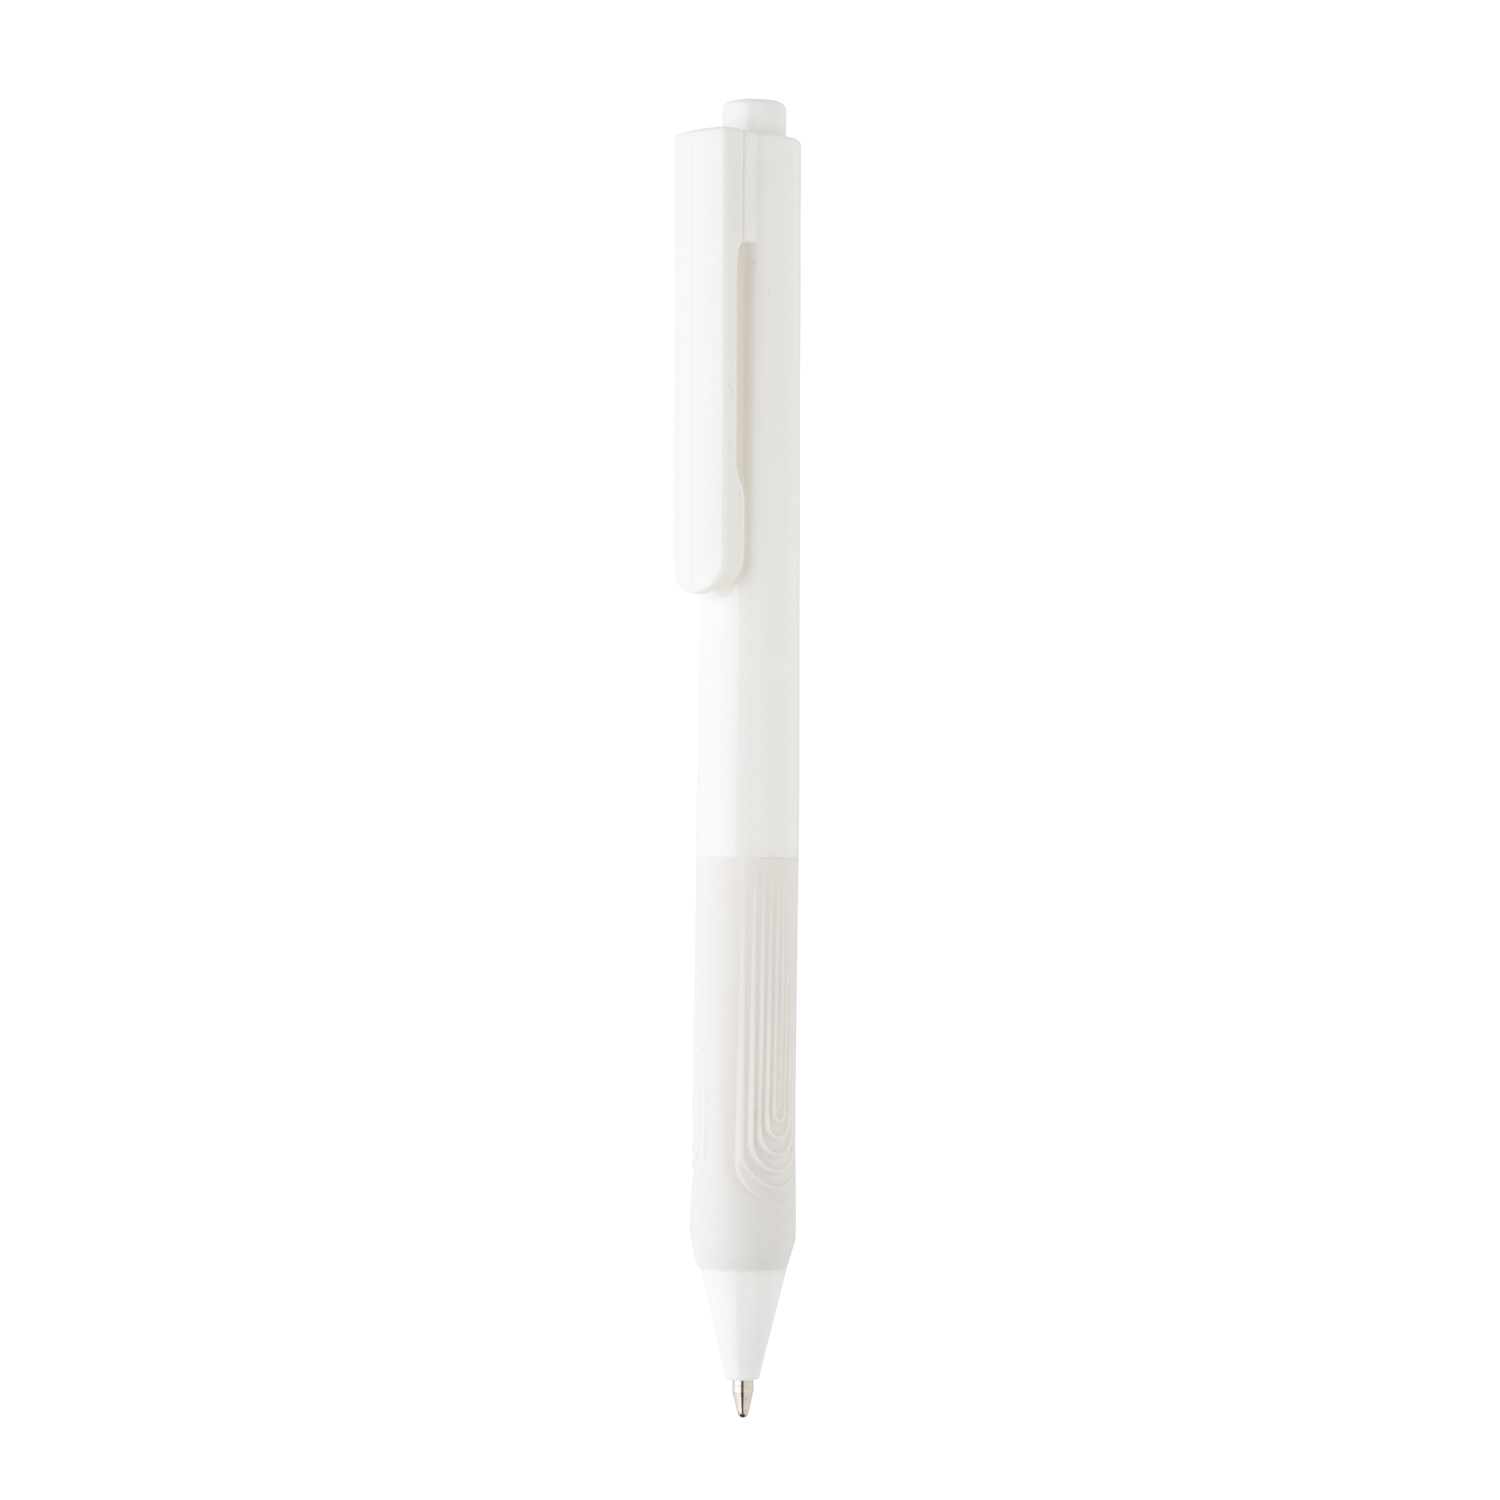 Артикул: XP610.823 — Ручка X9 с глянцевым корпусом и силиконовым грипом